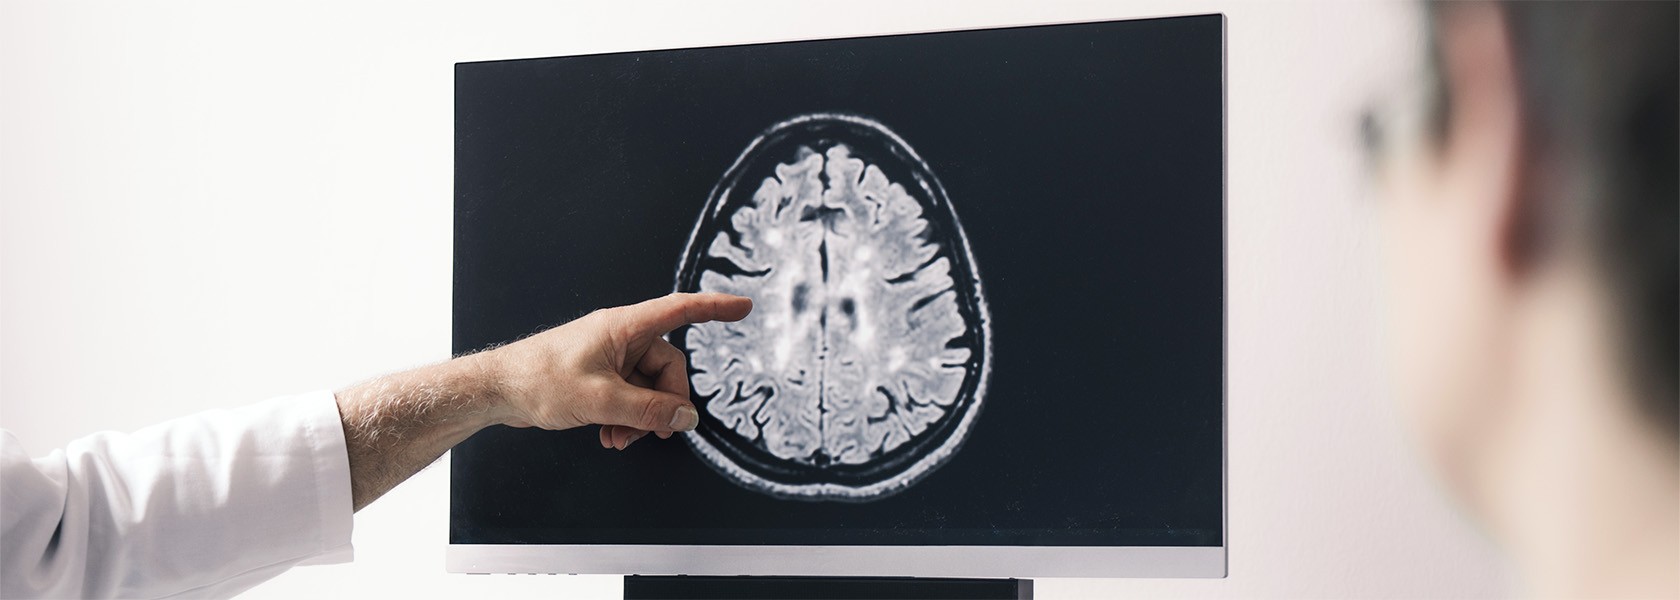 Arzt:in zeigt mit dem Finger auf ein Bildschirm, auf dem ein CT-Bild vom Gehirn zu sehen ist